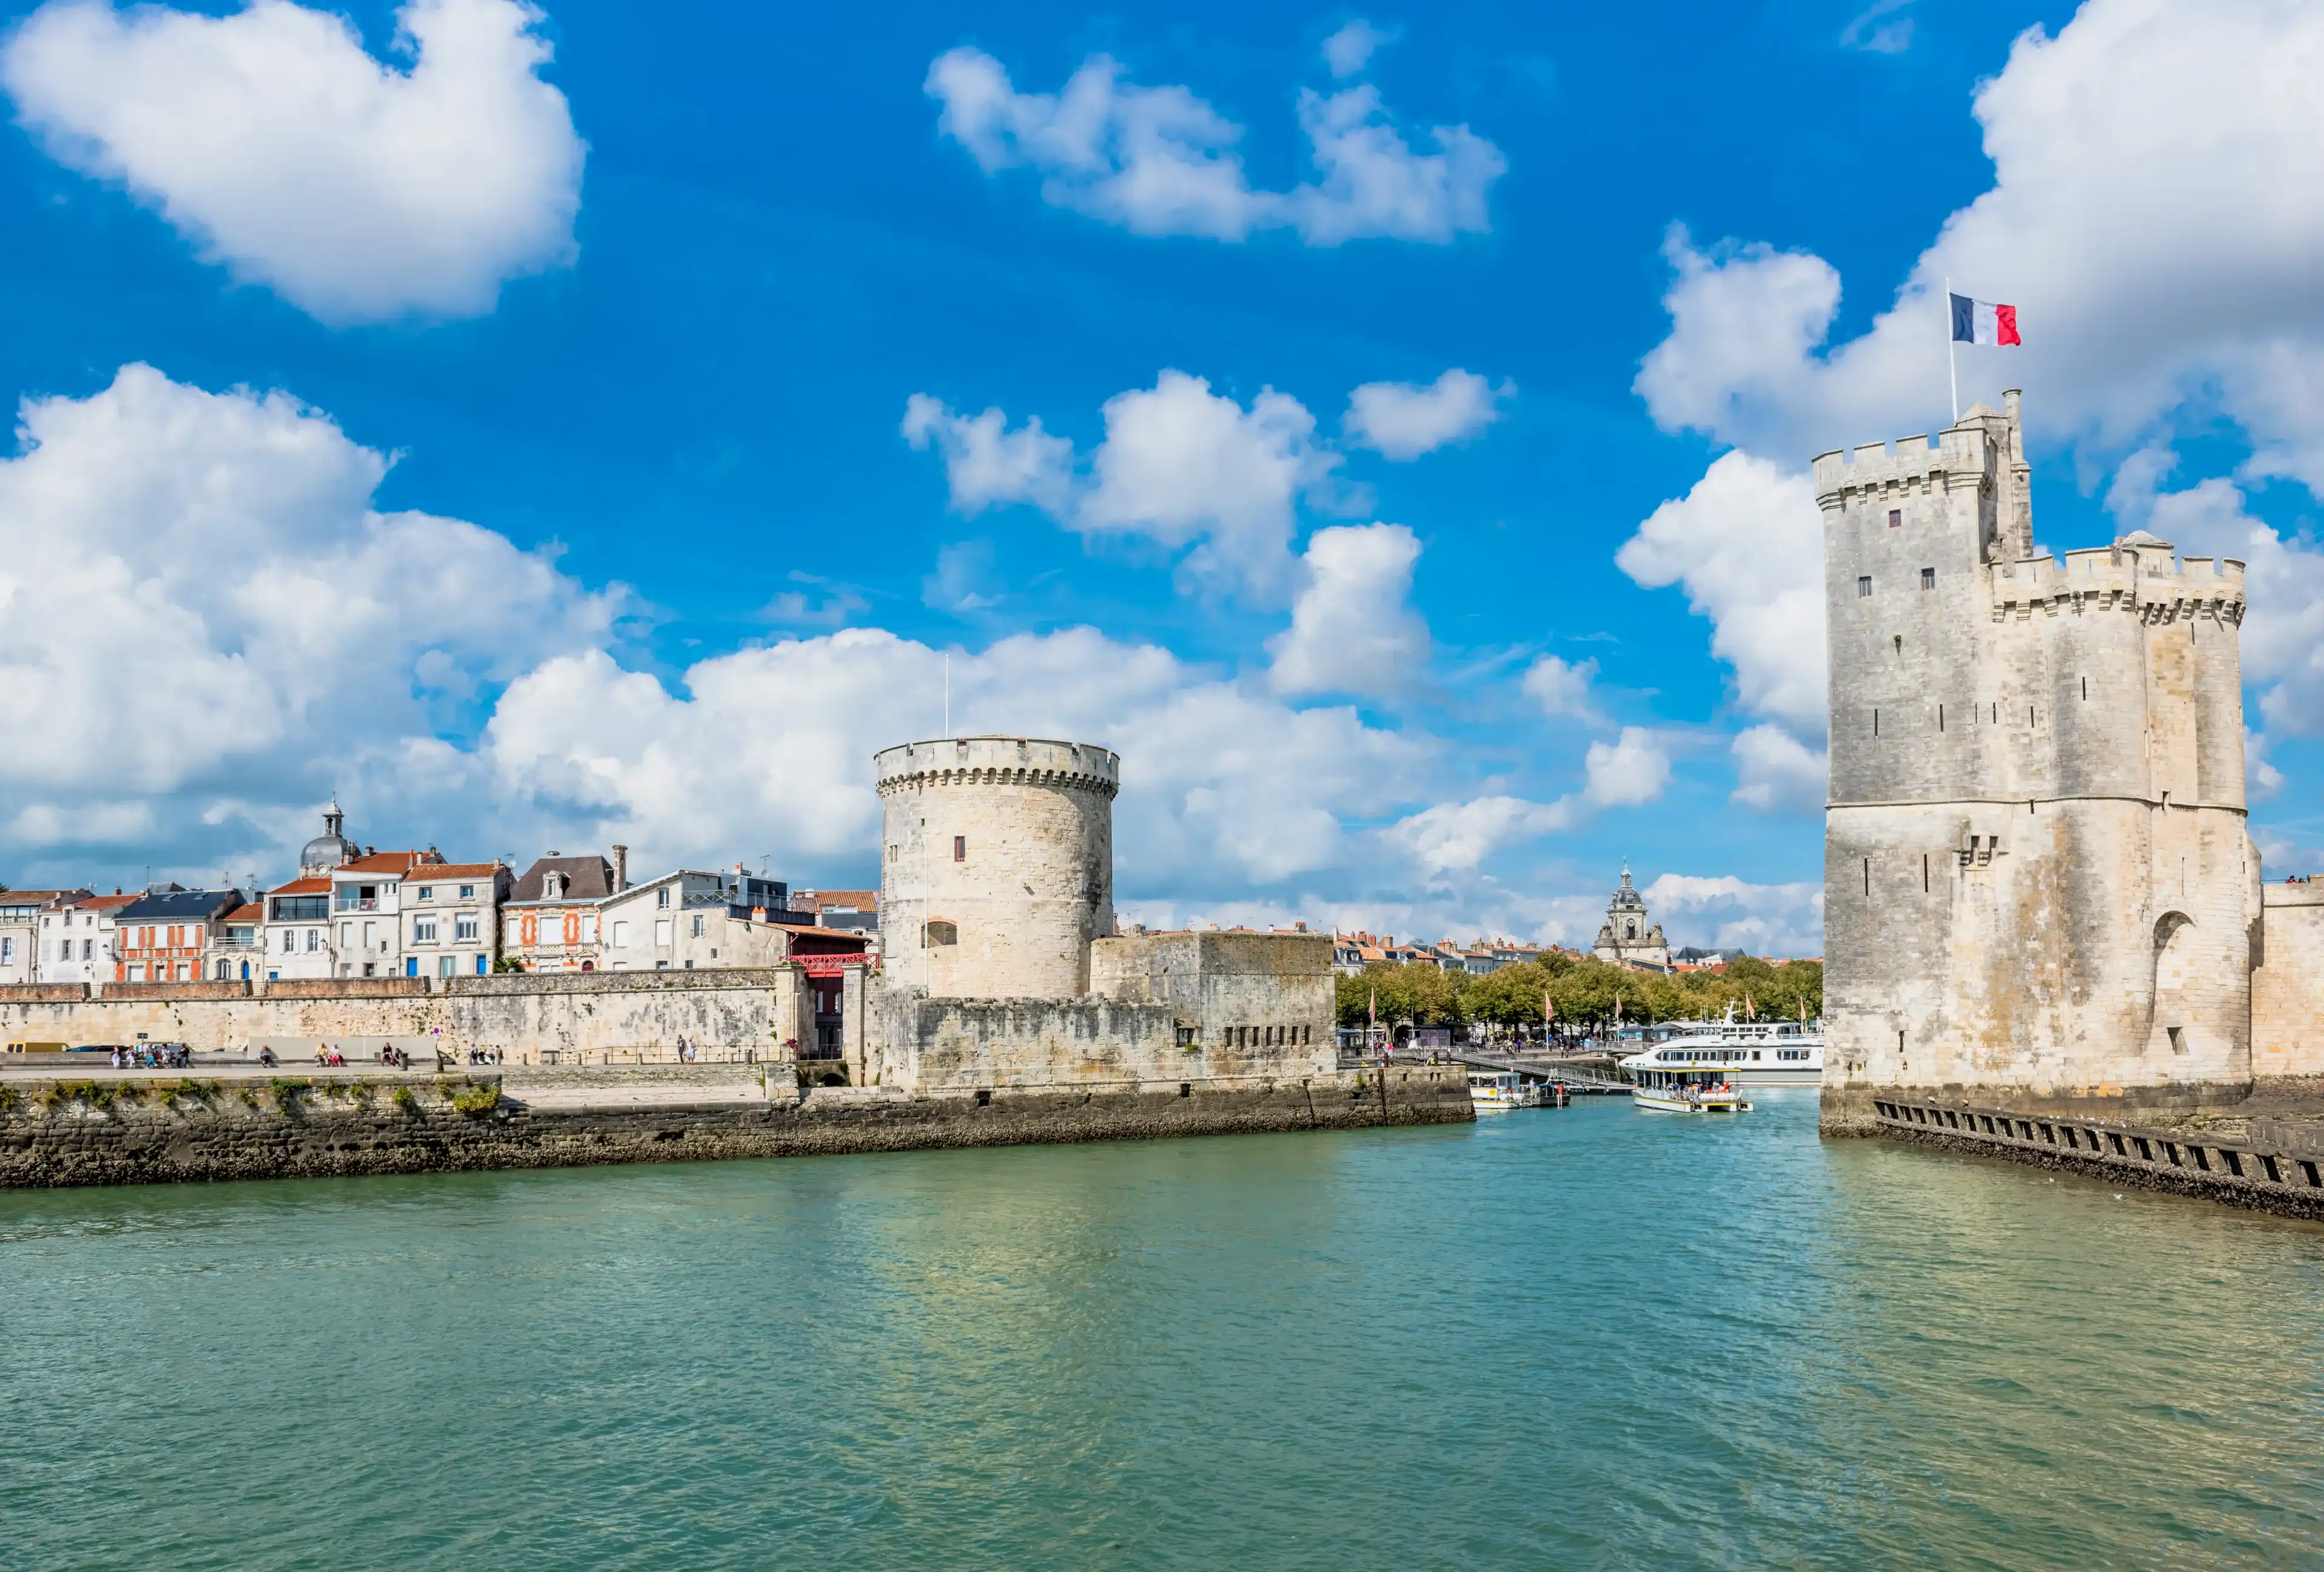 Best La Rochelle hotels. Cheap hotels in La Rochelle, France